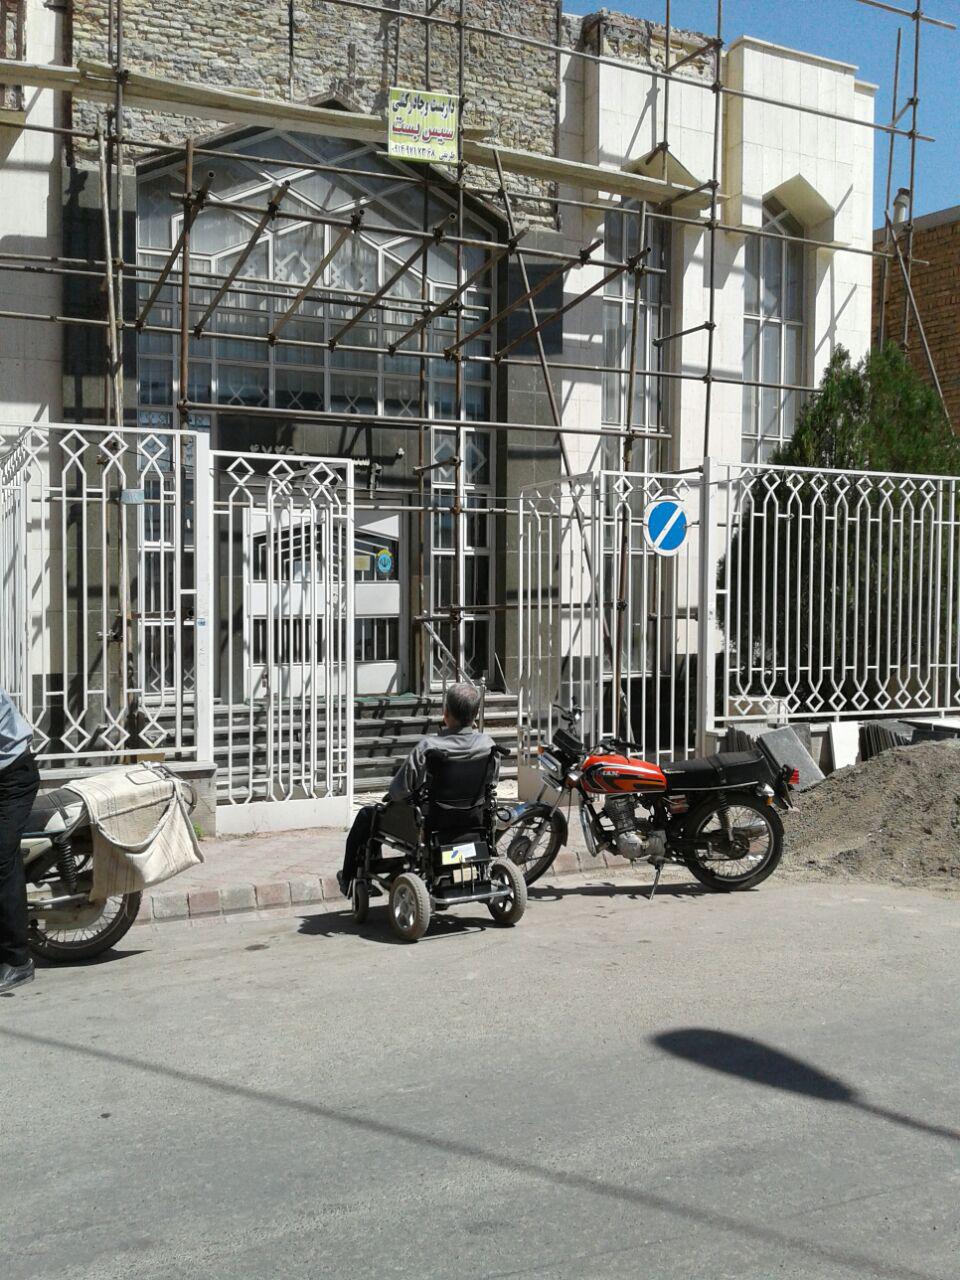 ارباب رجوع بانک در کنار خیابان  به انتظار متصدی!!/عکس